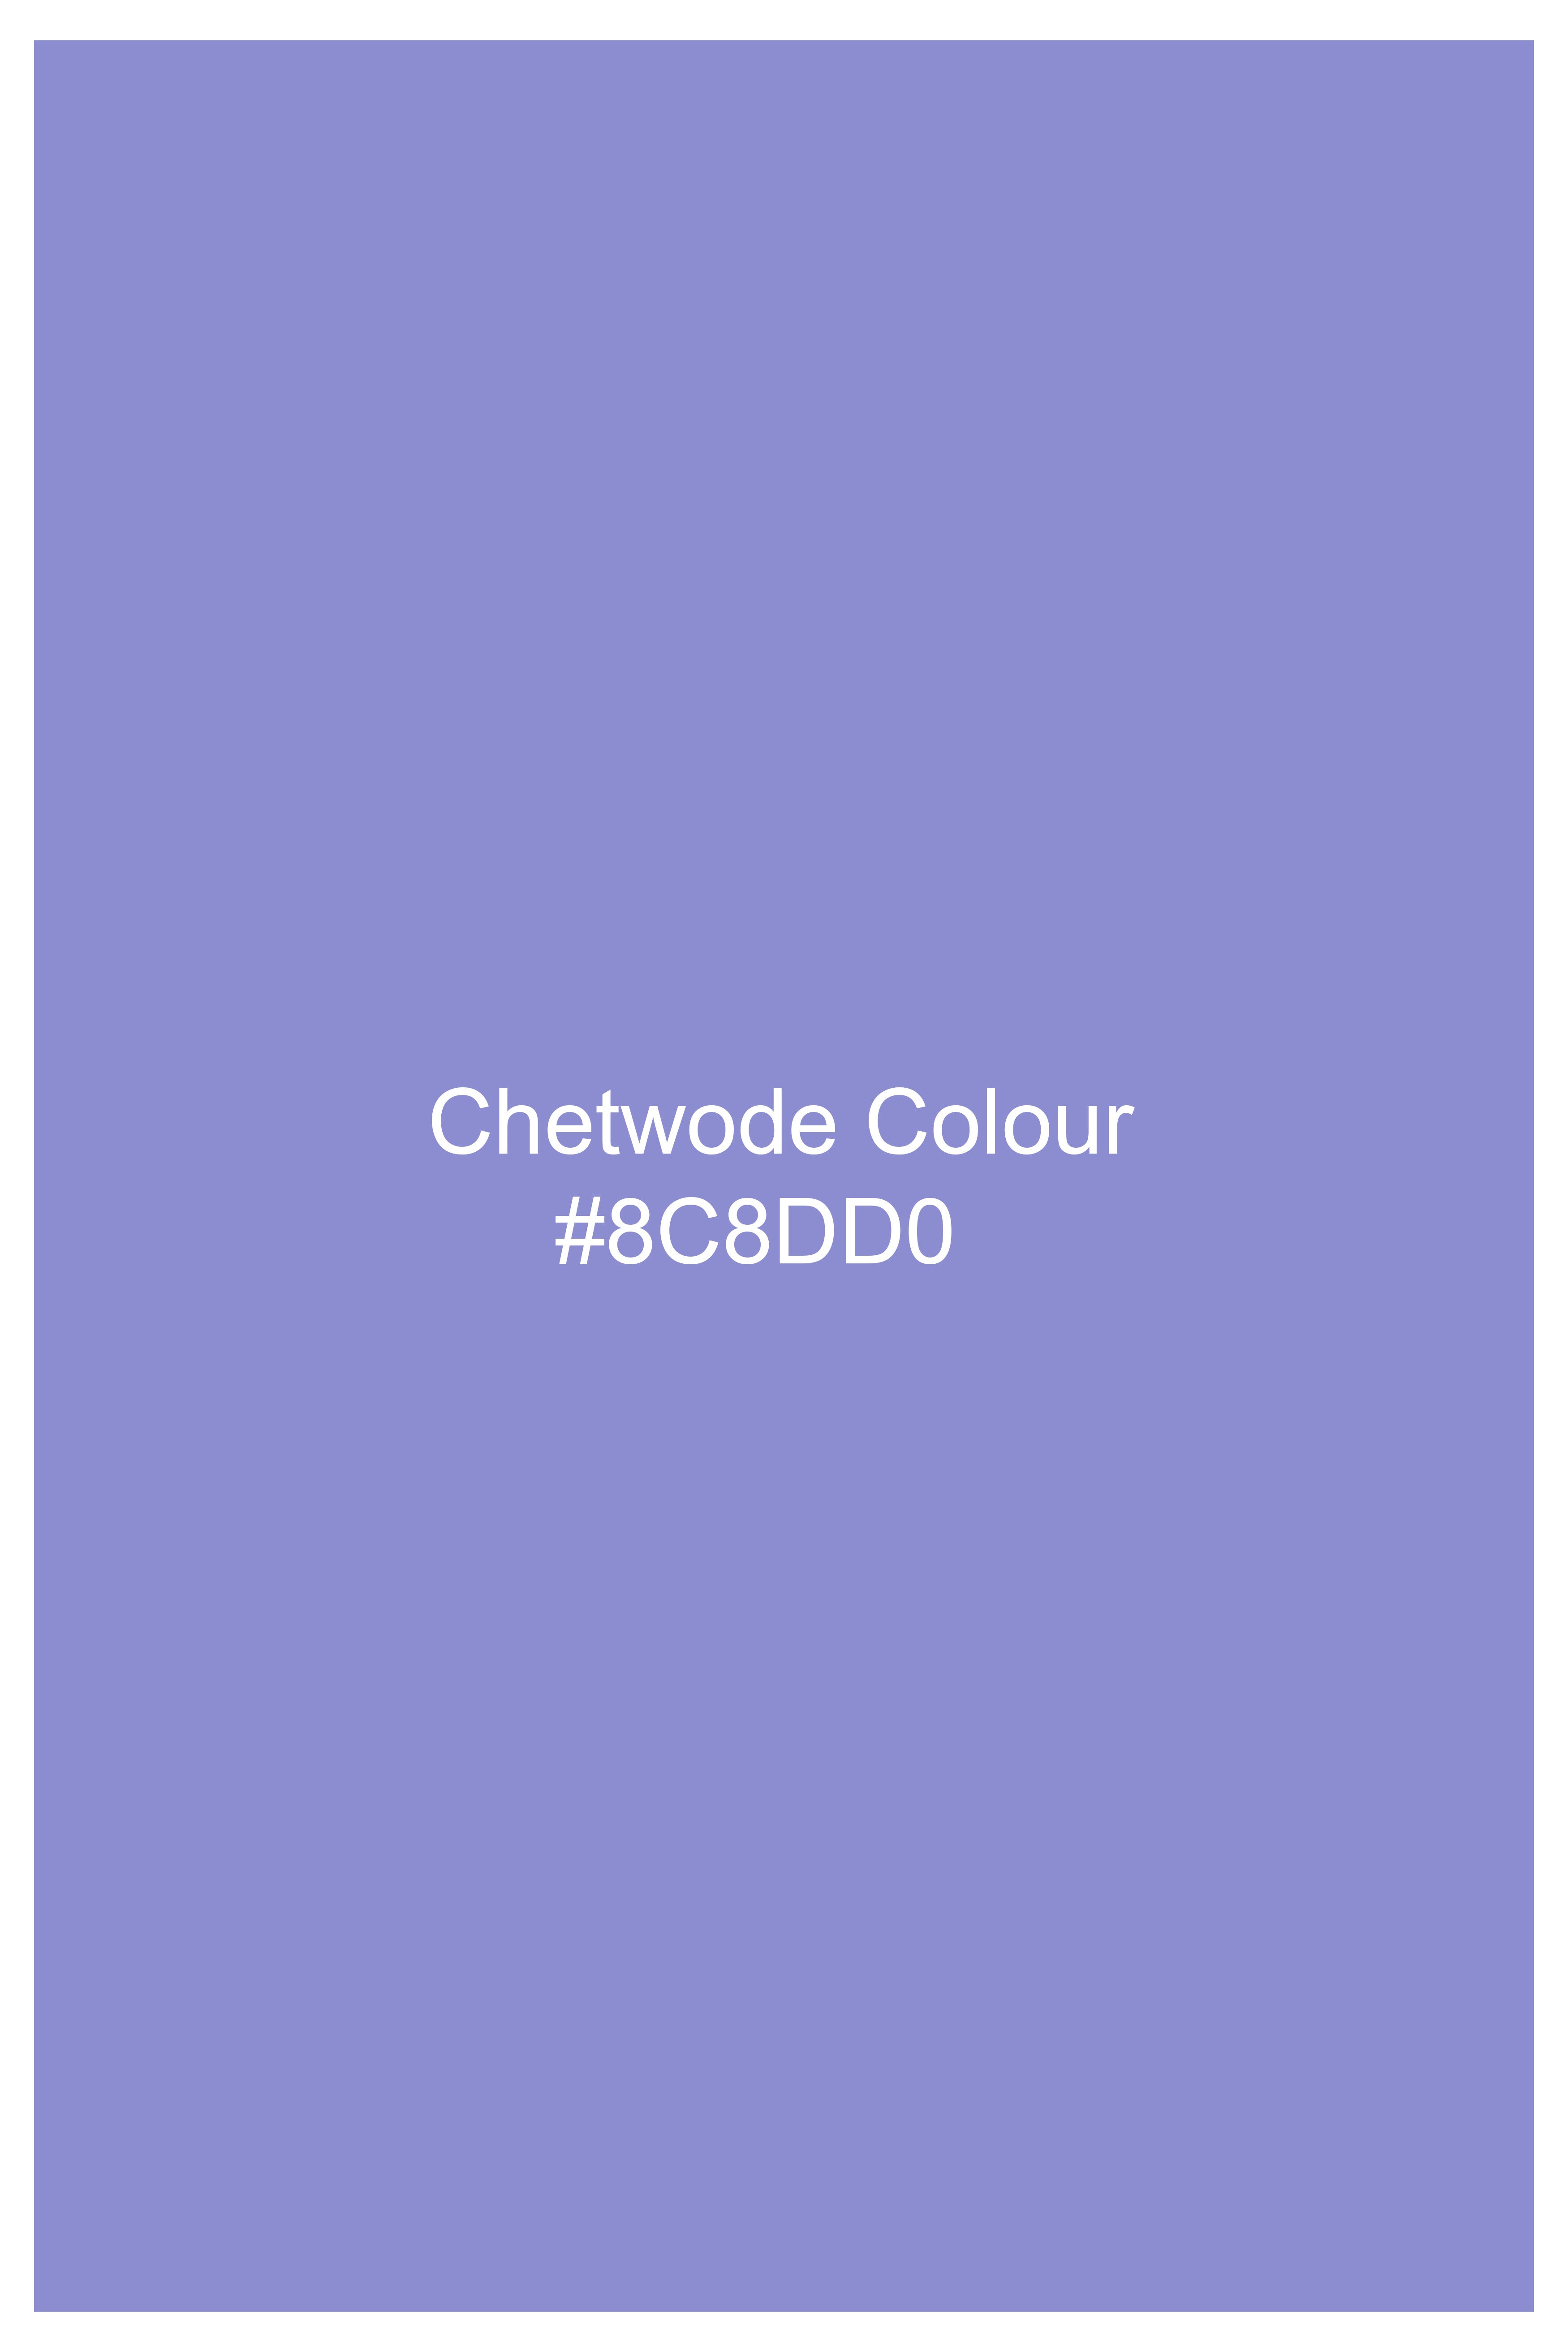 Chetwode Purple Cross Placket Premium Cotton Bandhgala Blazer